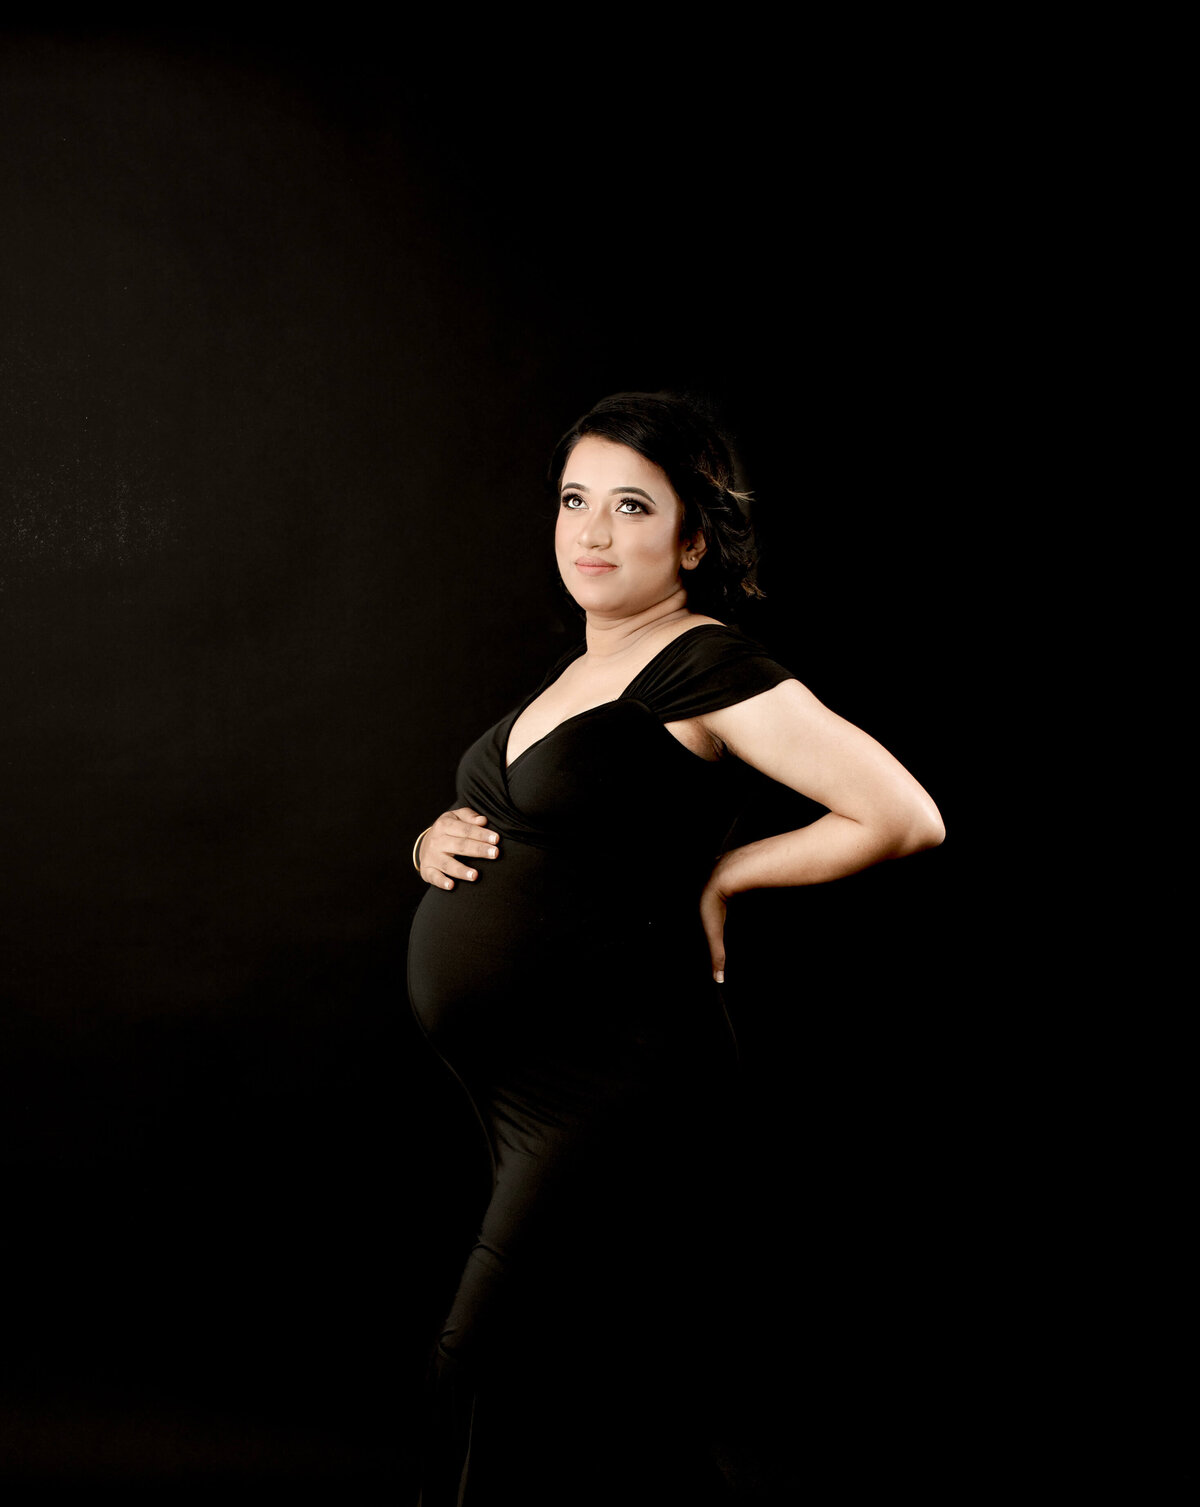 Hobart Mum-to-be in Maternity Fashion Photoshoot by Studio Photographer Lauren Vanier